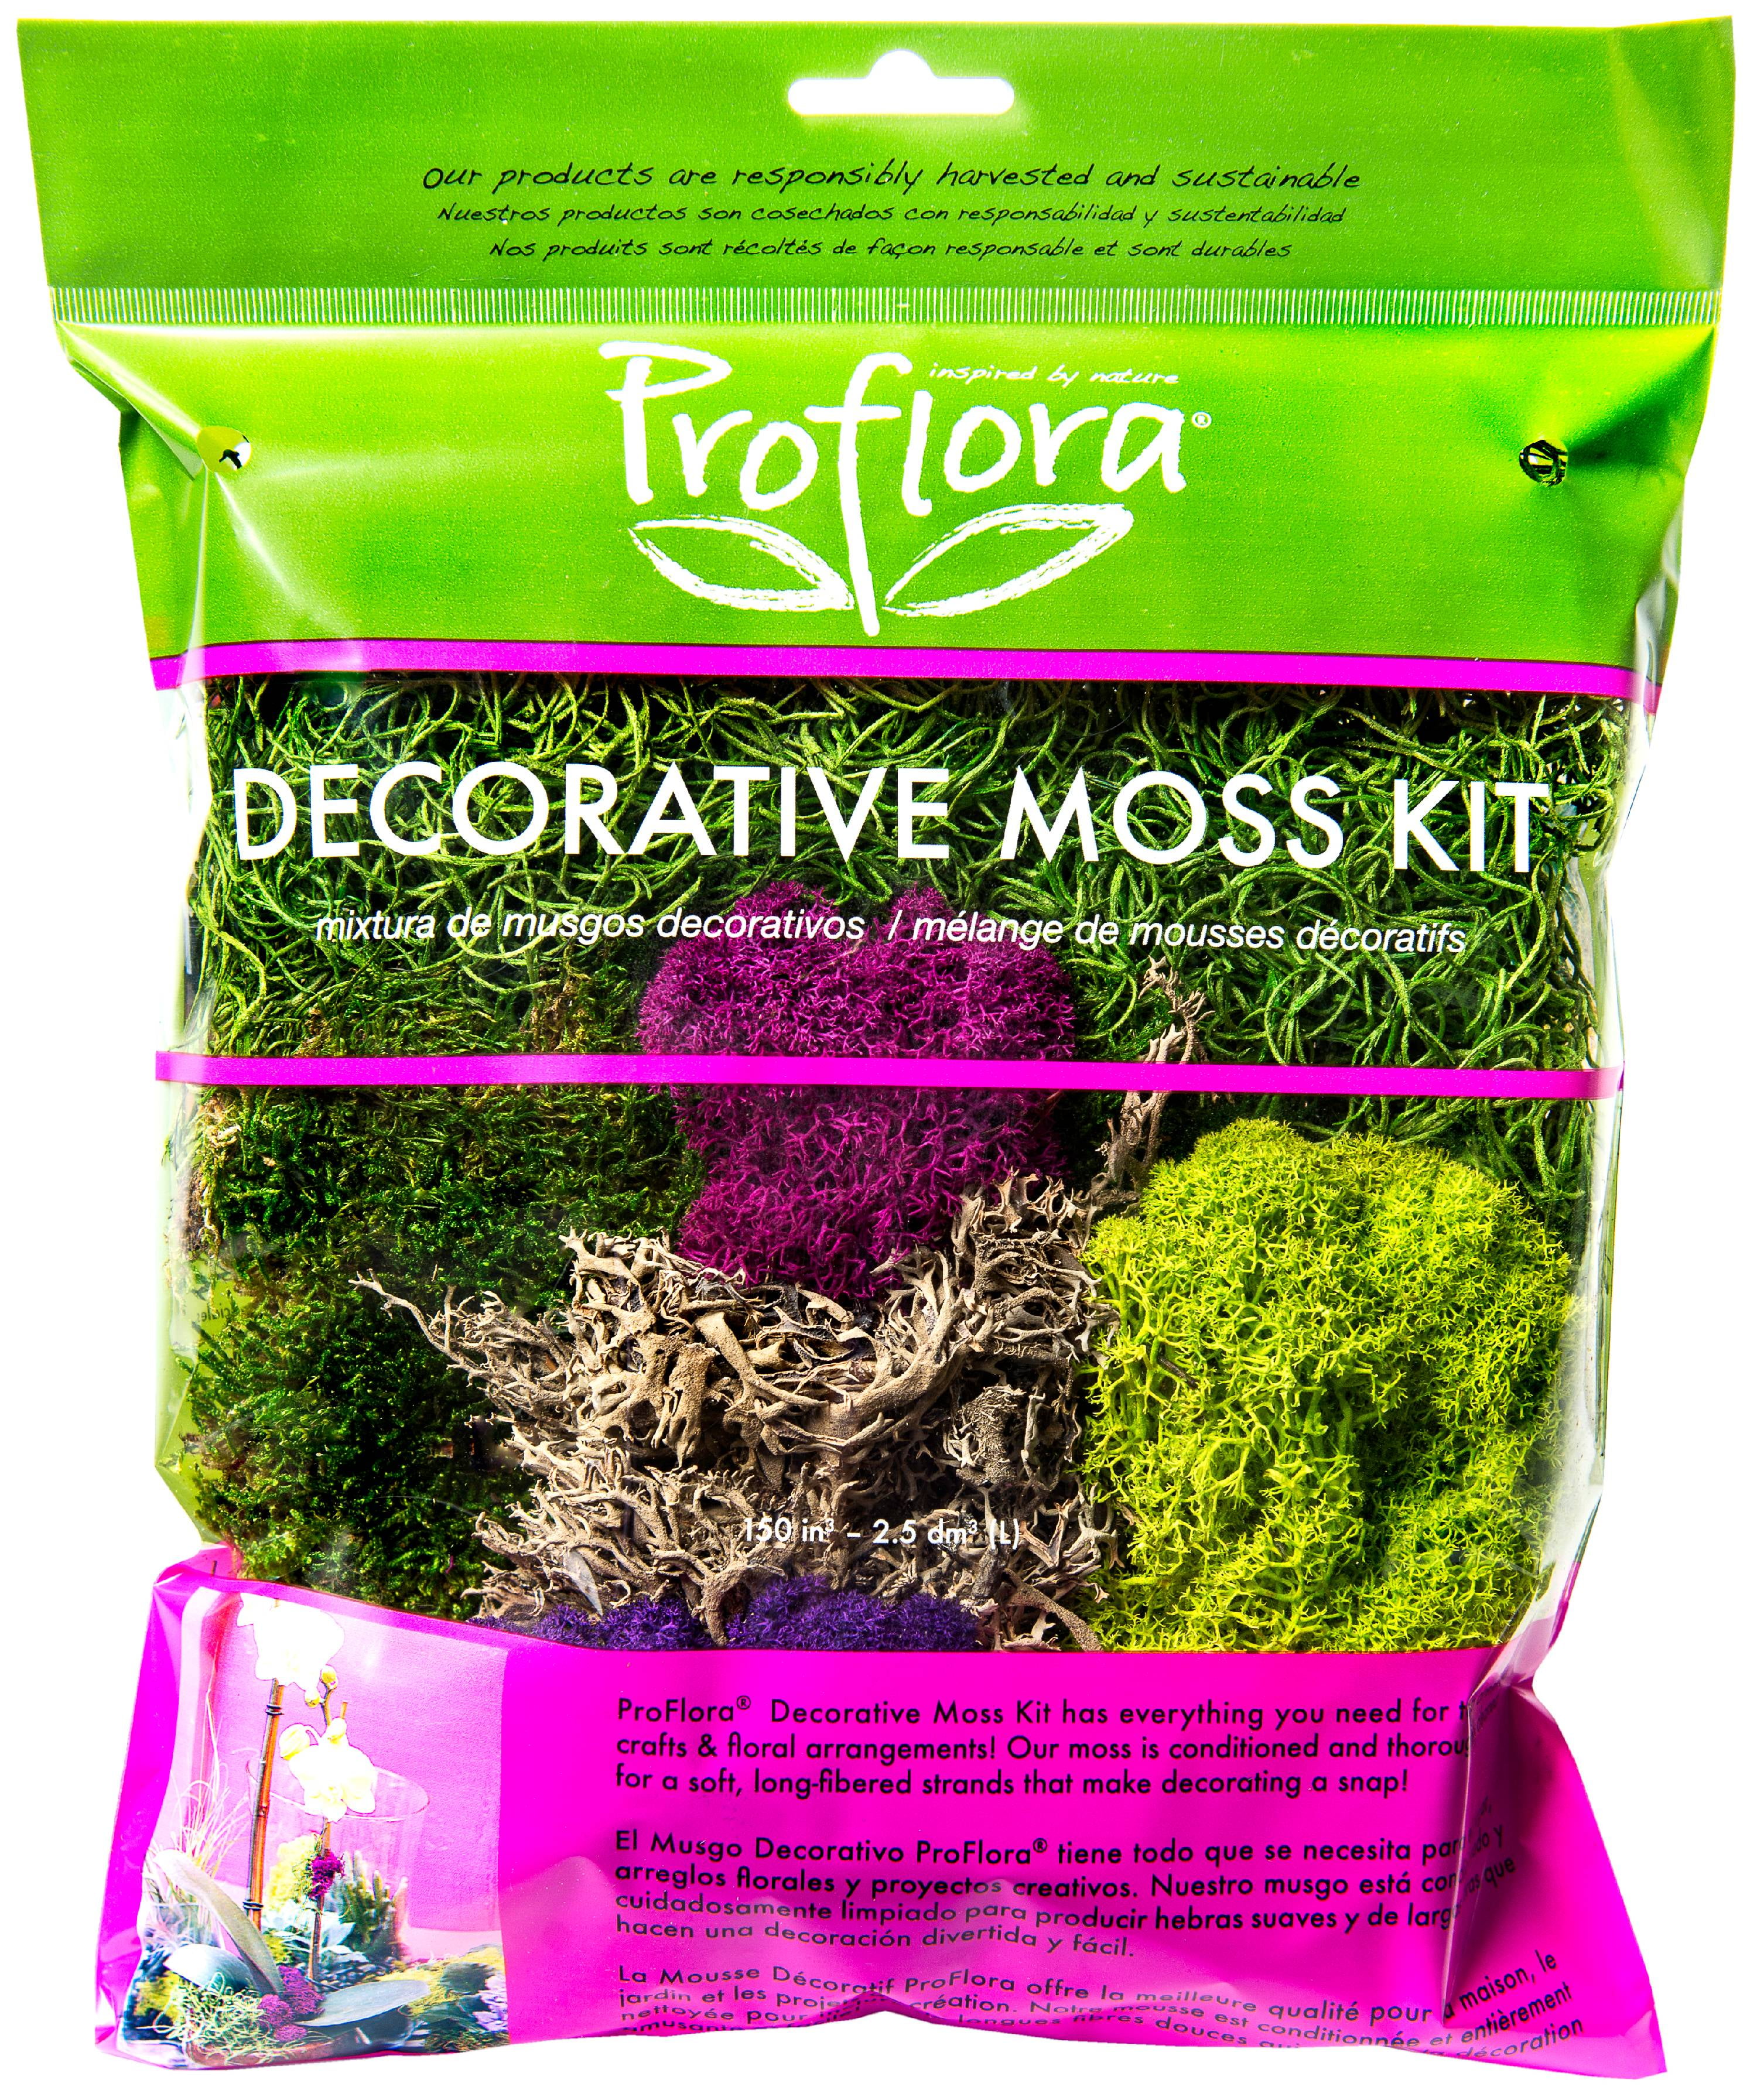 Proflora Moss Mix Collection - Each